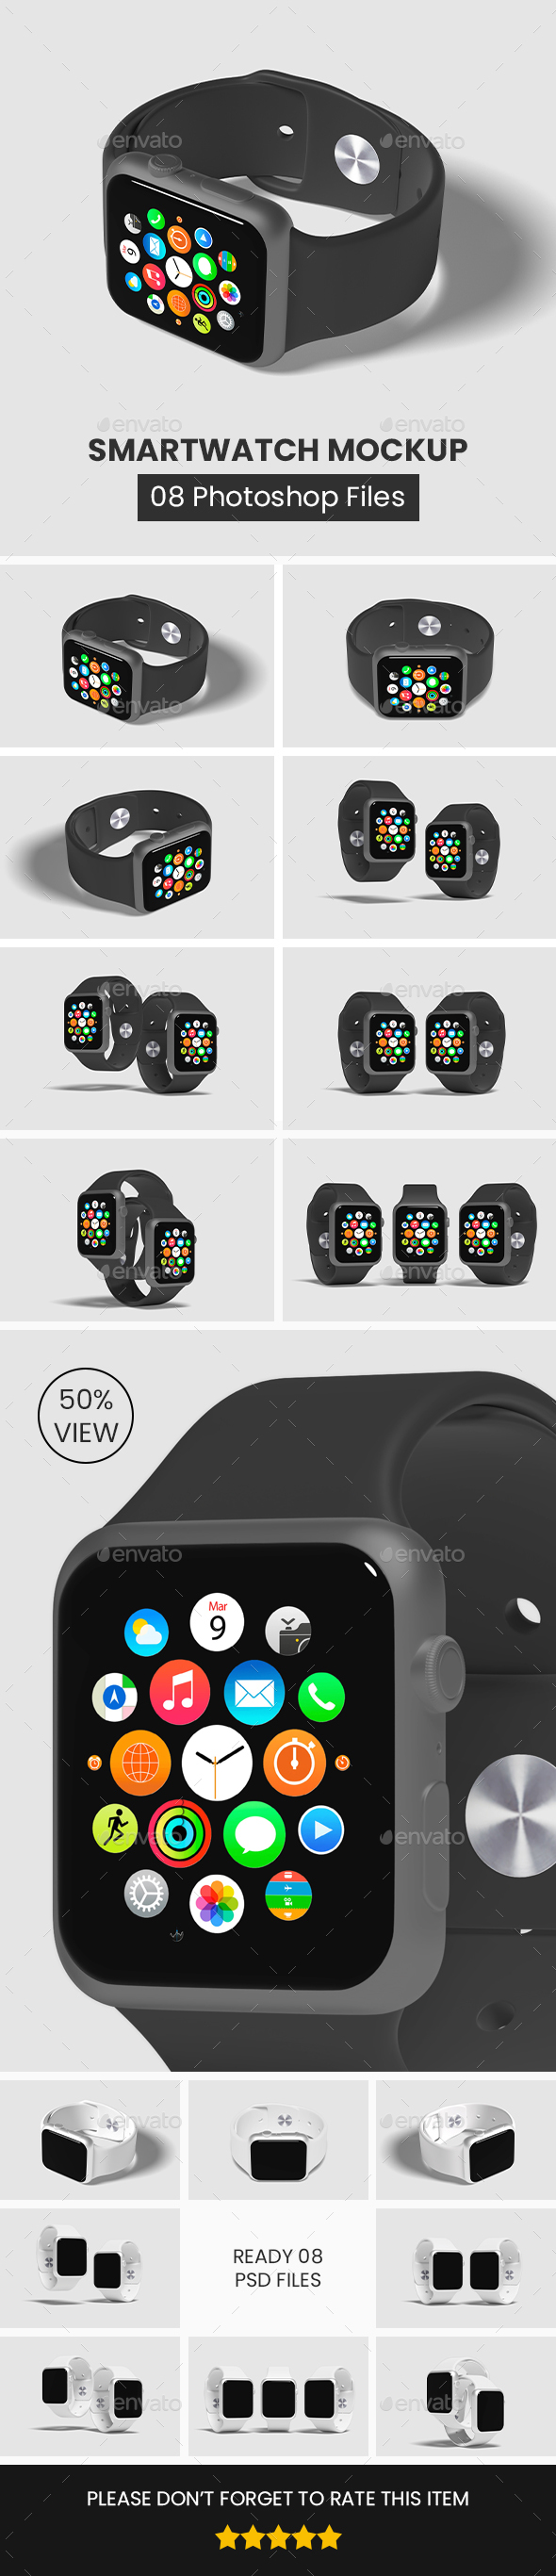 Smartwatch Mockup | Apple Watch